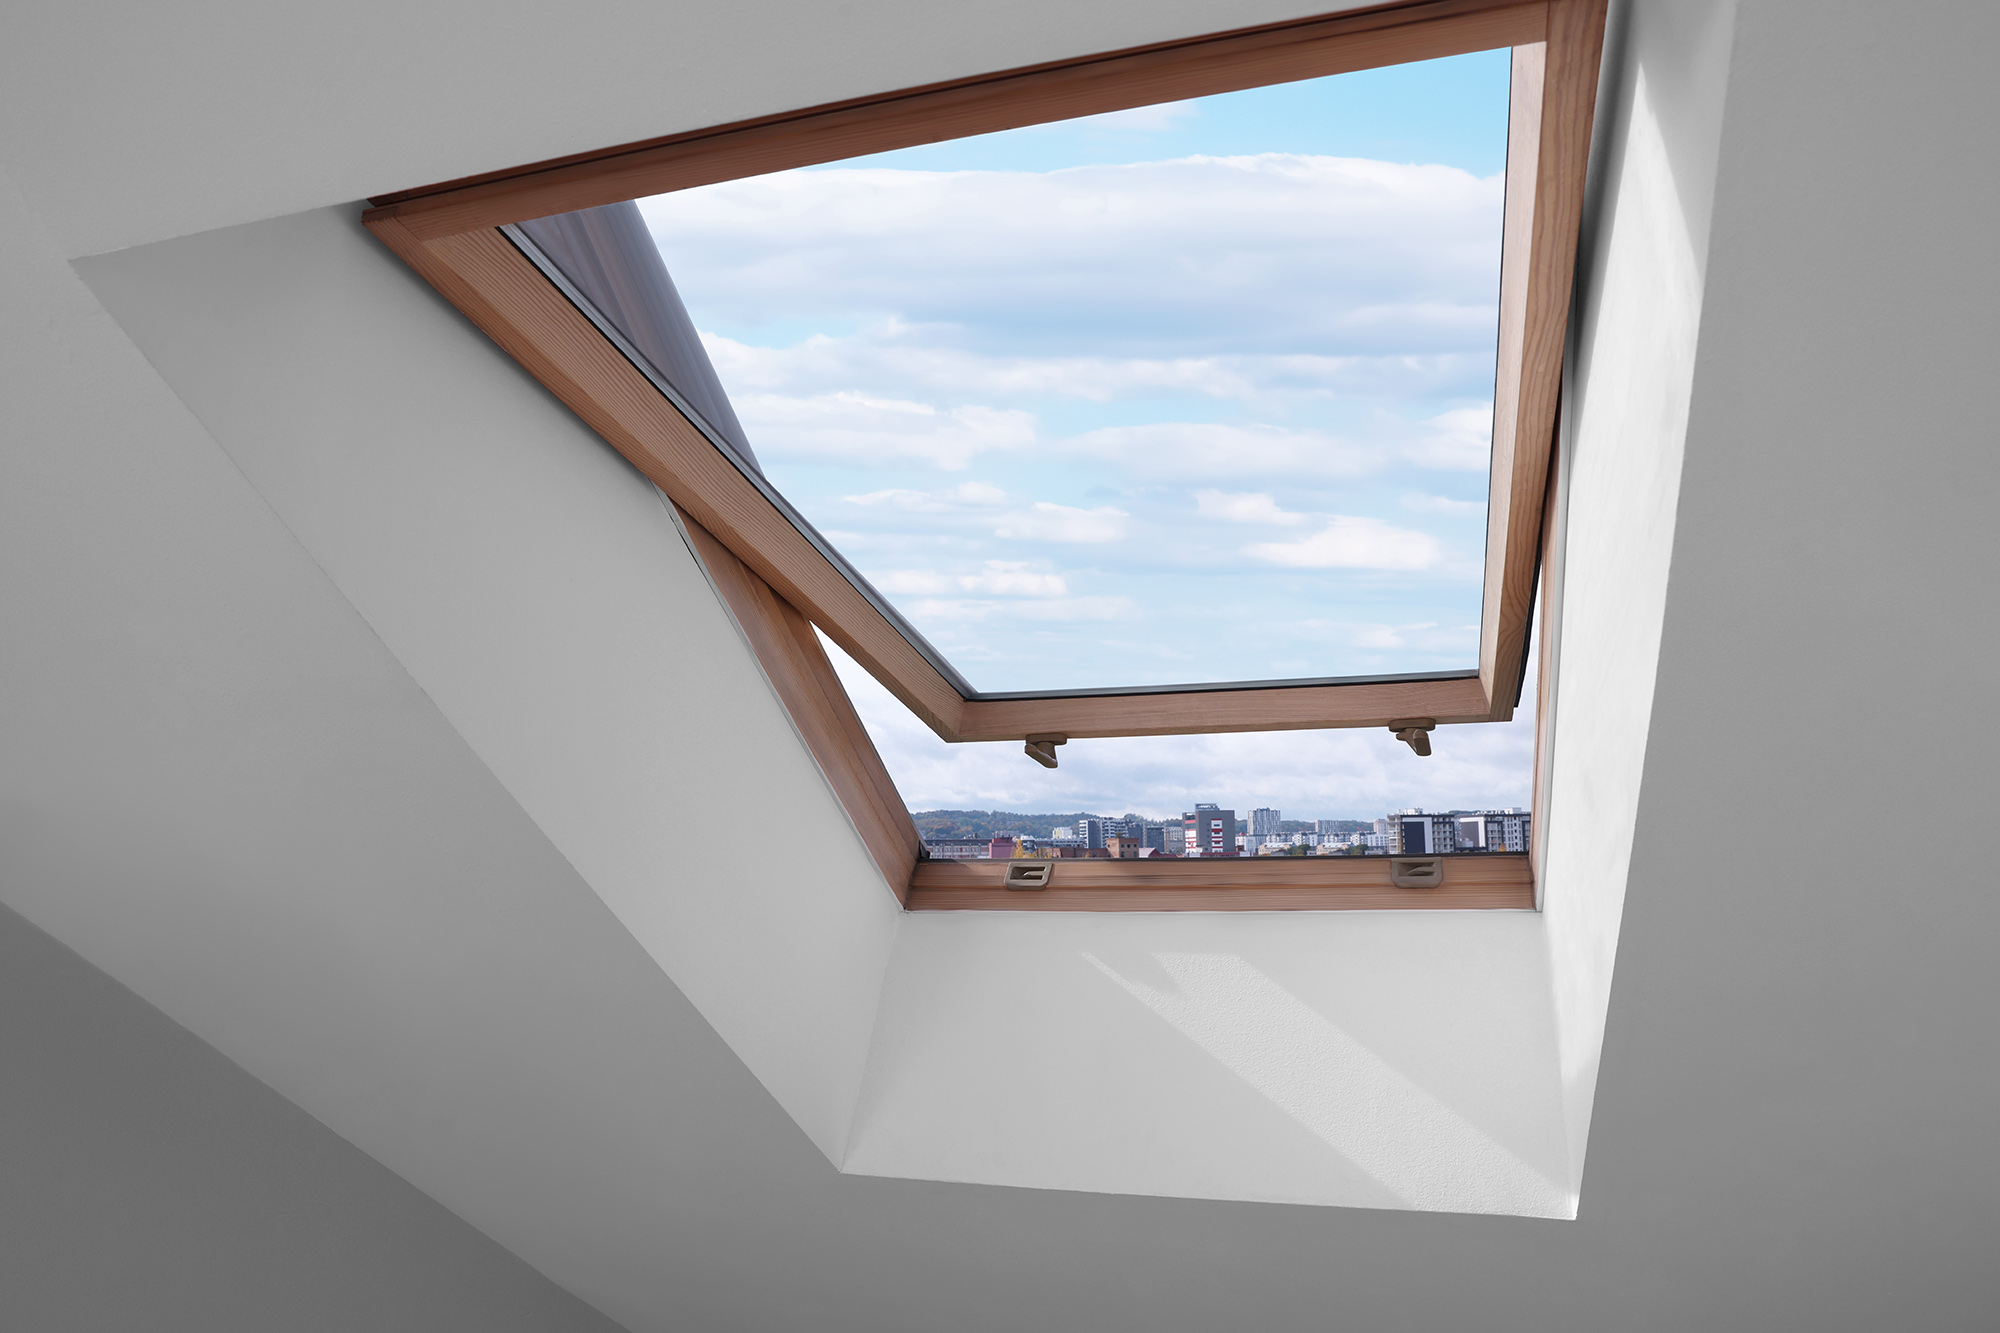 En copropriété, une fenêtre de toit est-elle une partie commune ou privative ?